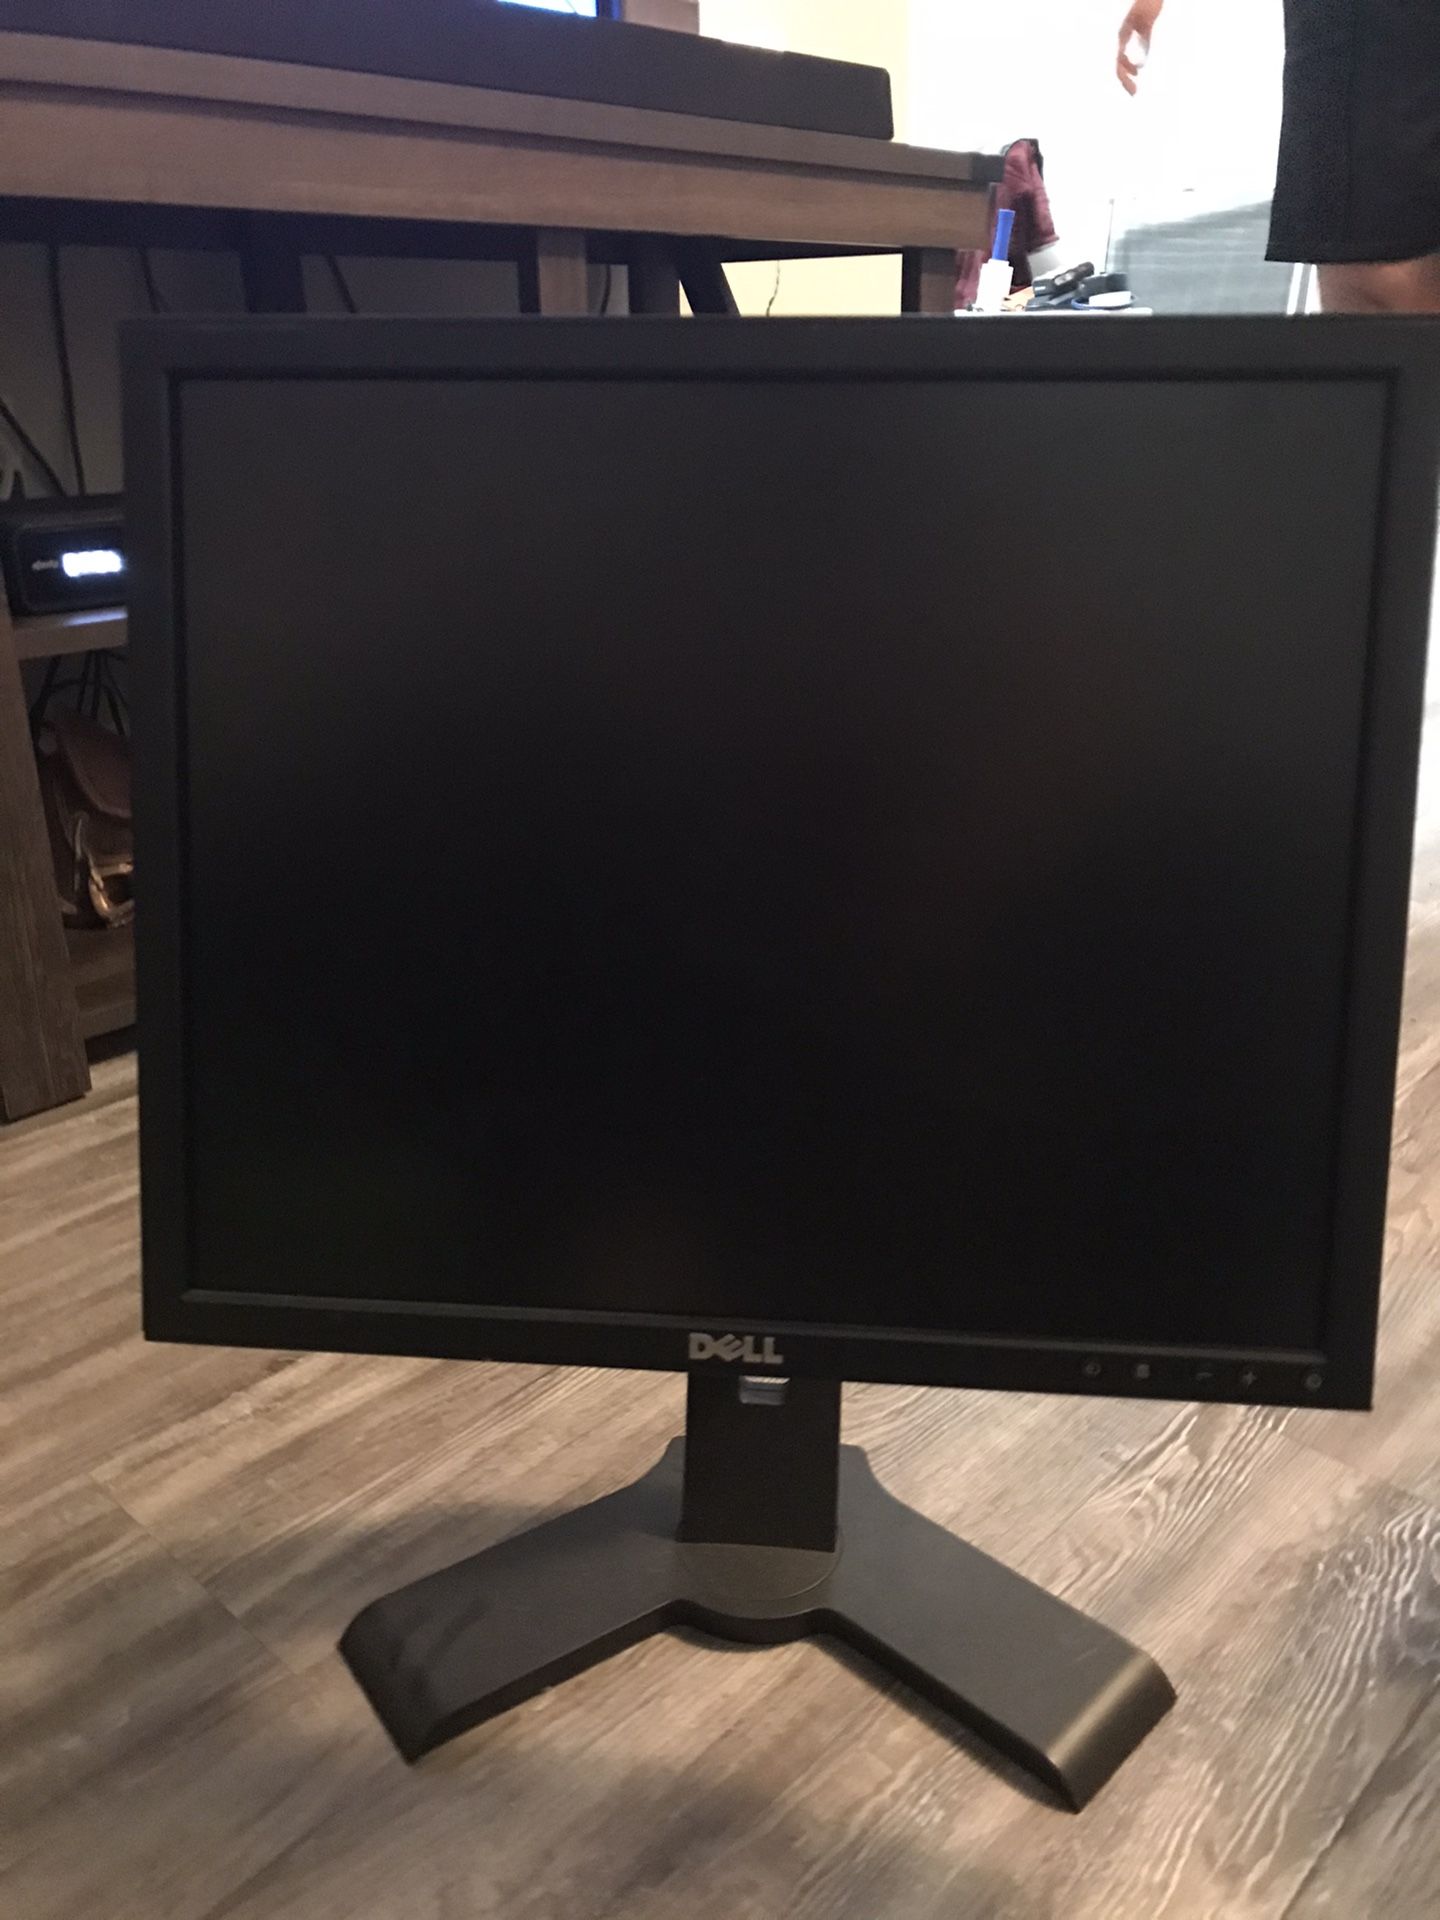 19 inch Dell Computer Monitor